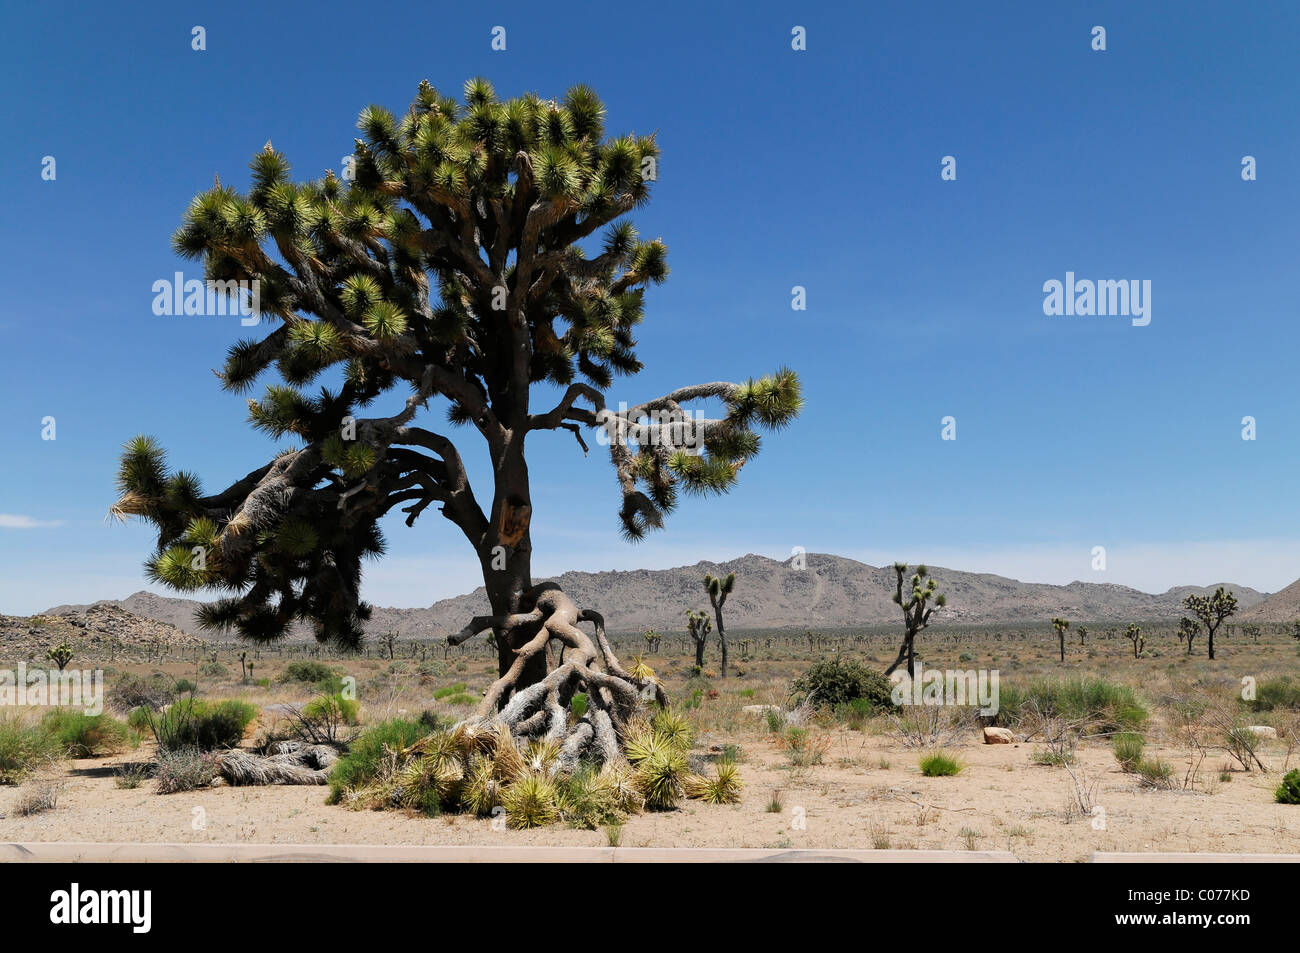 Joshua tree palm, yucca (Yucca brevifolia), Joshua Tree National Park, Palm Desert, Californie du Sud, USA, Amérique du Nord Banque D'Images